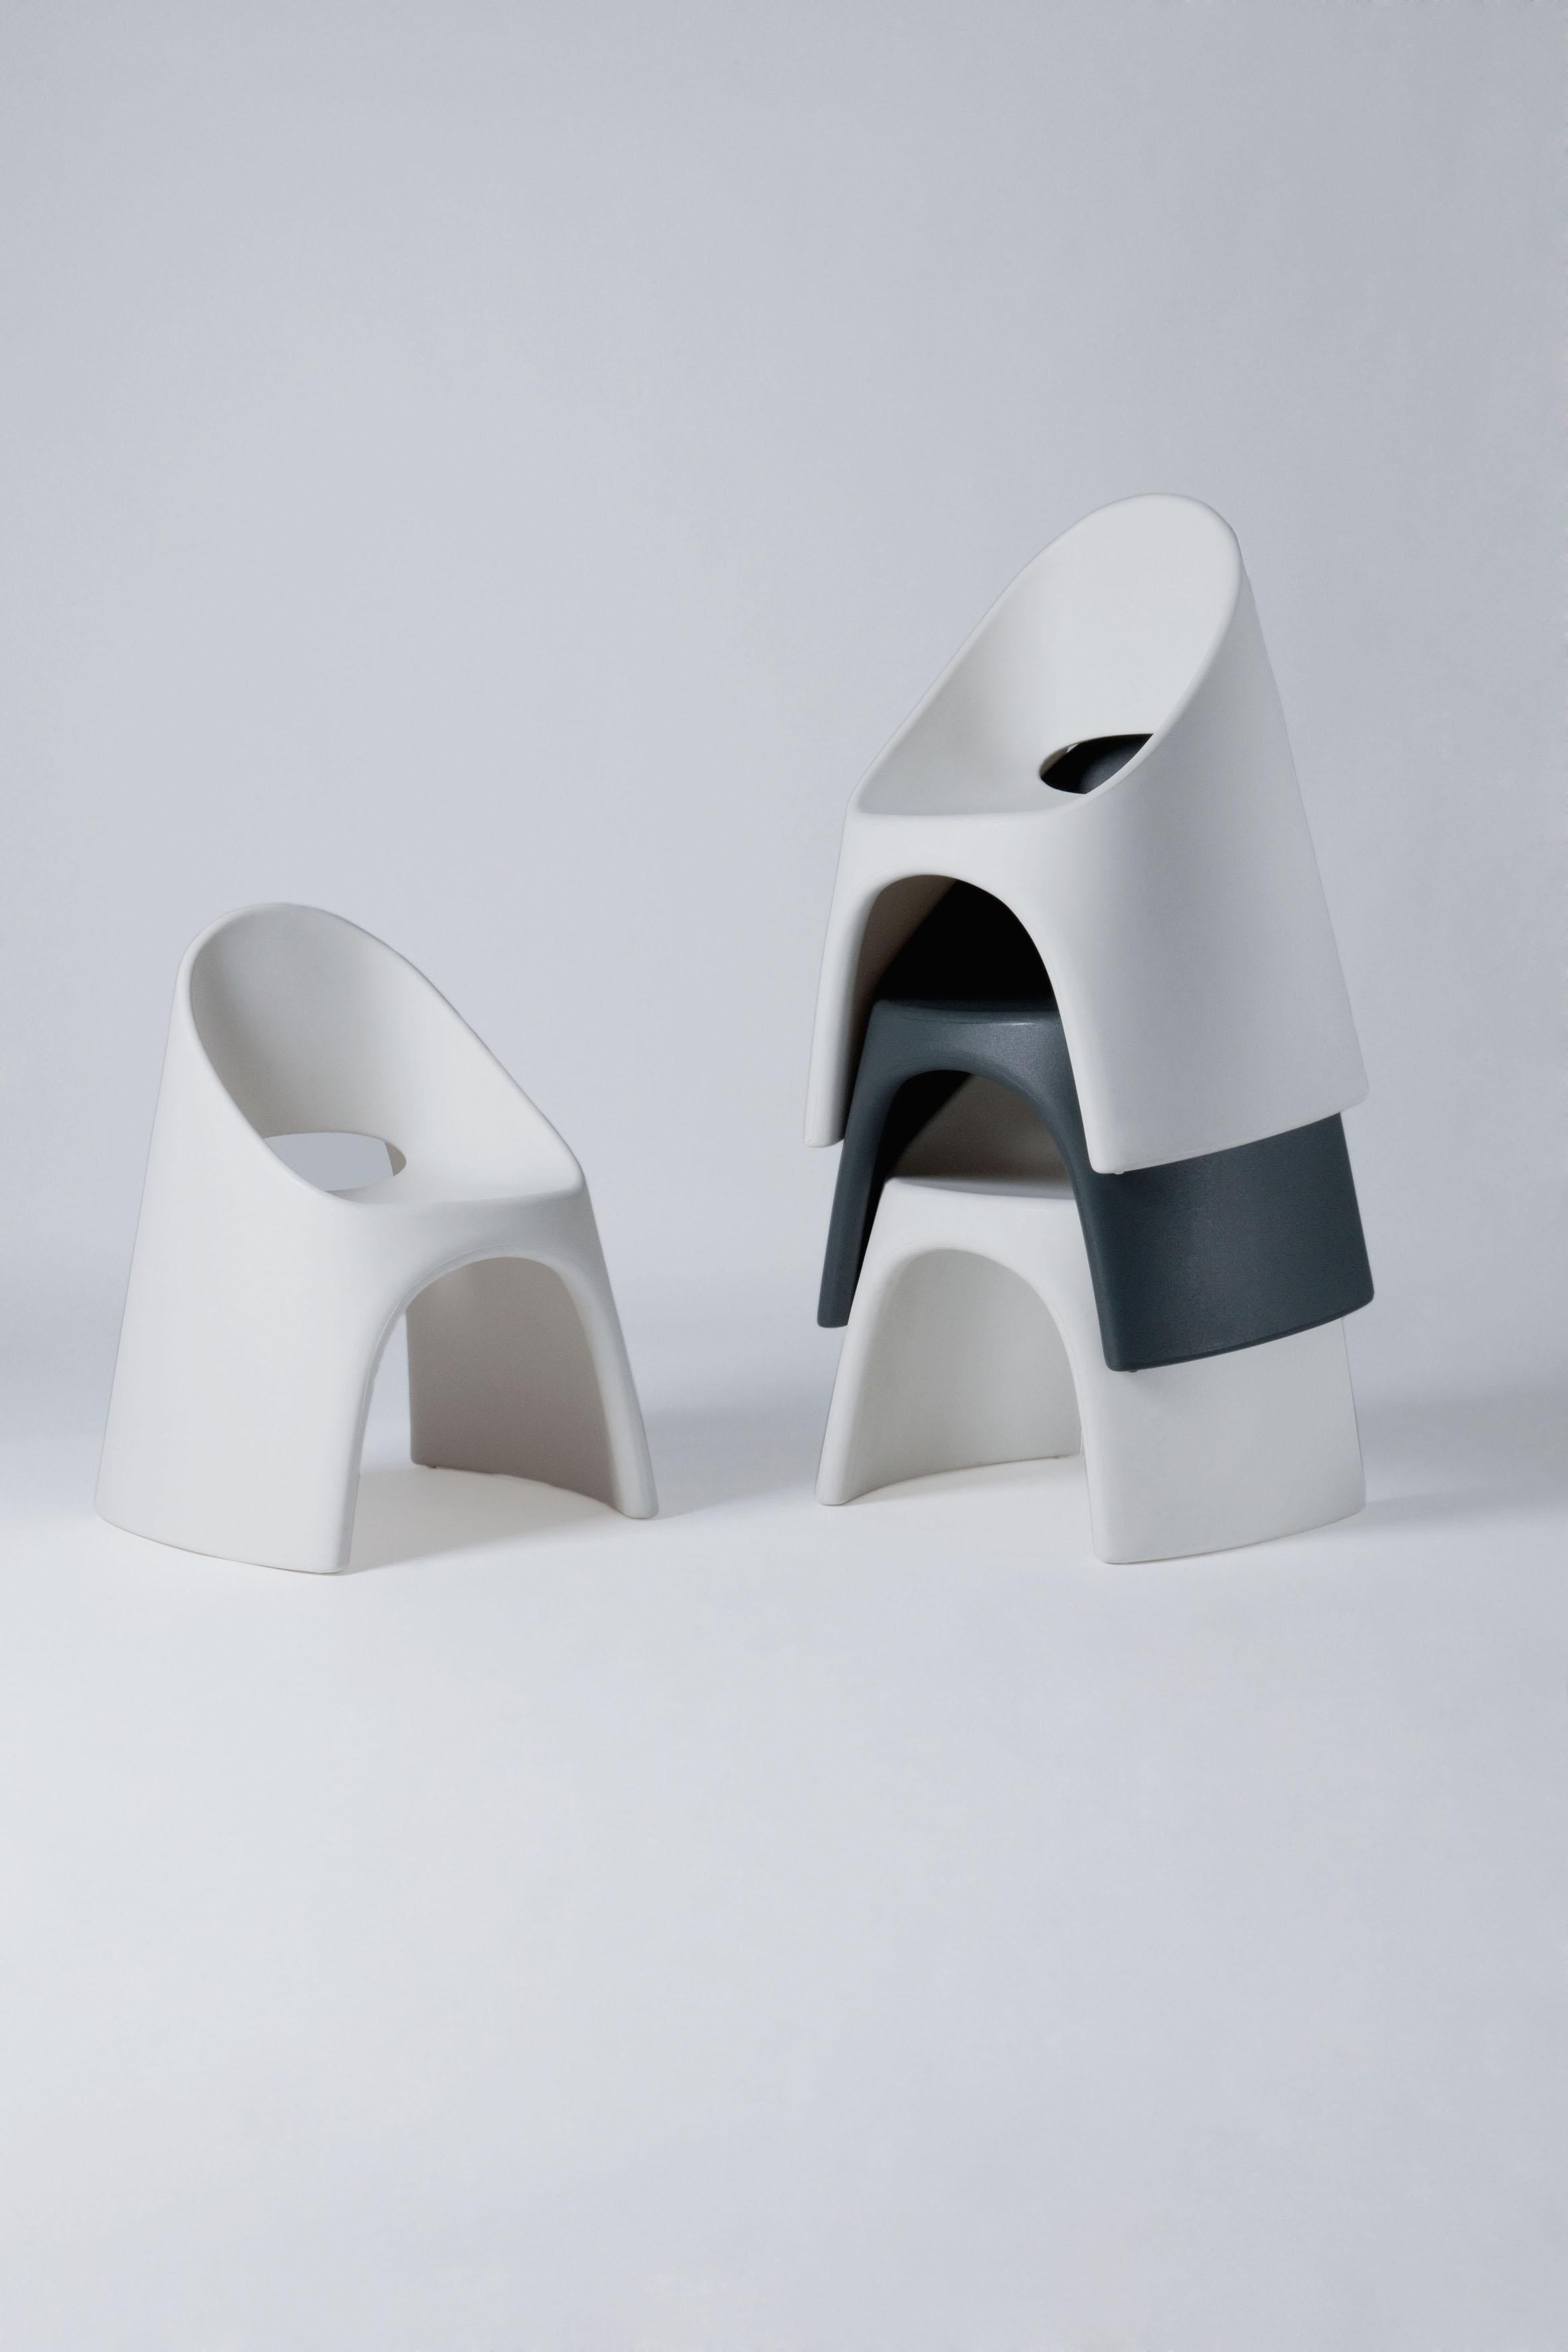 Italian Slide Design Amélie Chair in Dove Gray by Italo Pertichini For Sale